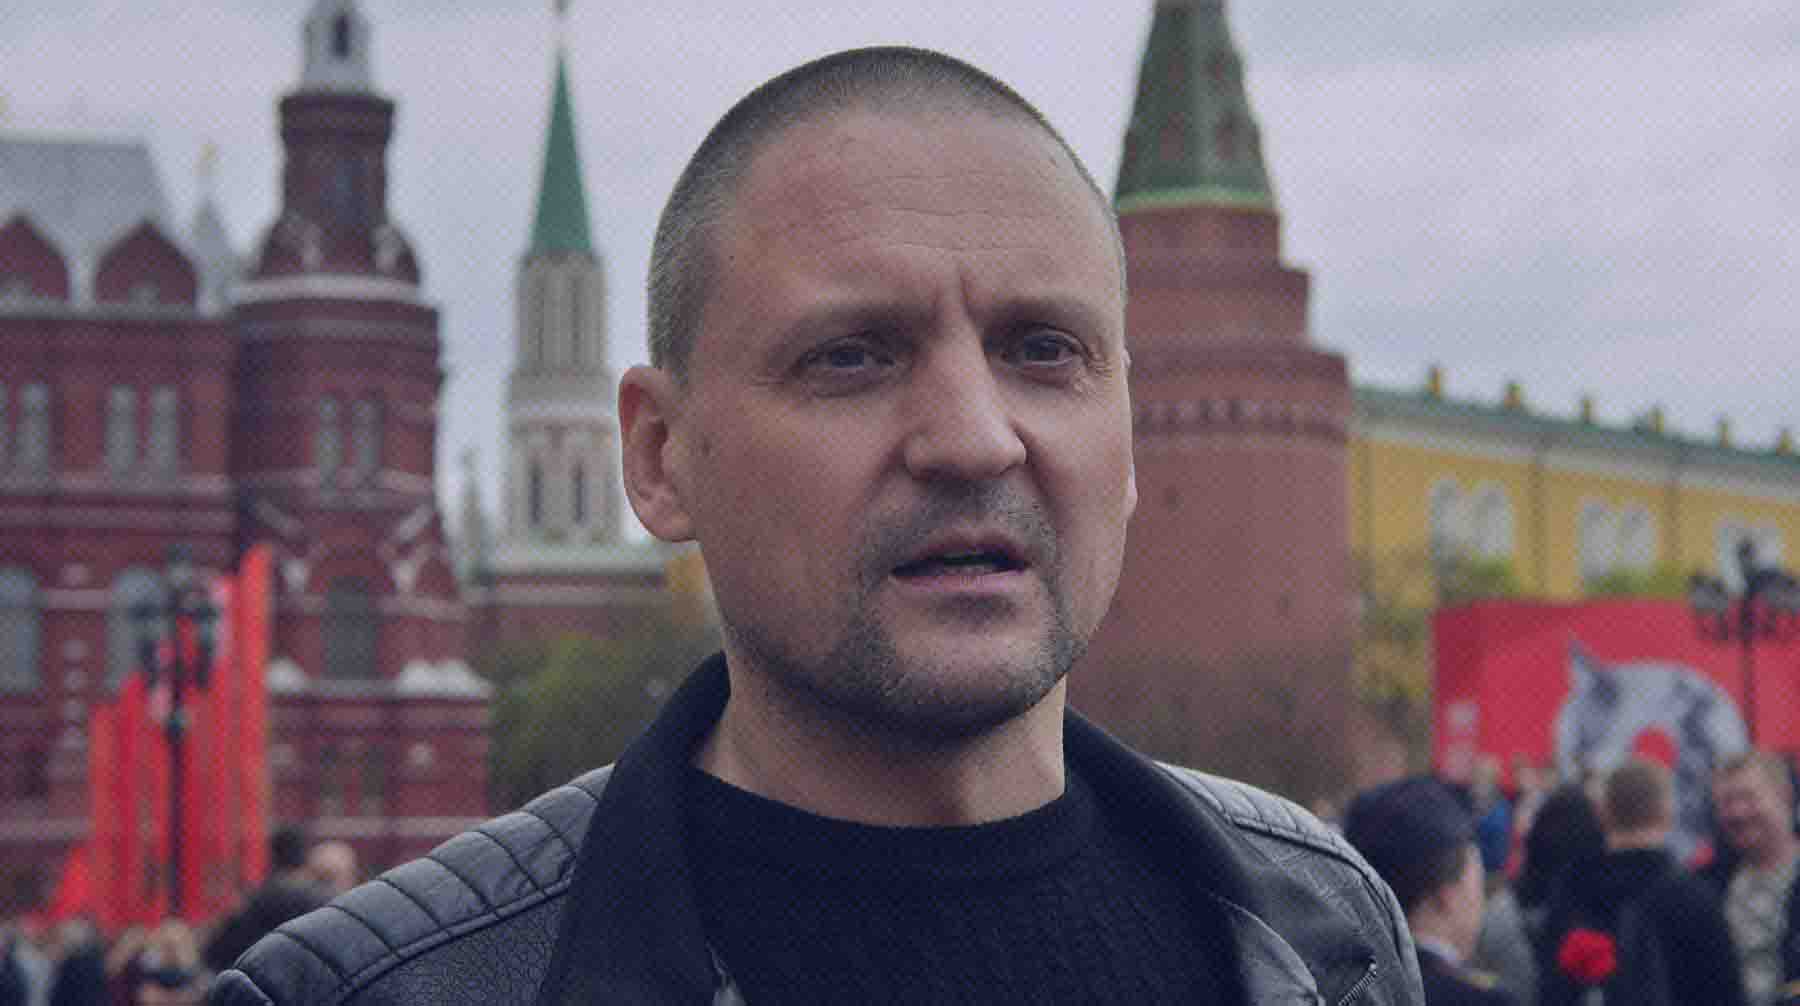 Адвокат политика рассказала, что в отношении него возбудили уголовное дело об оправдании терроризма Сергей Удальцов